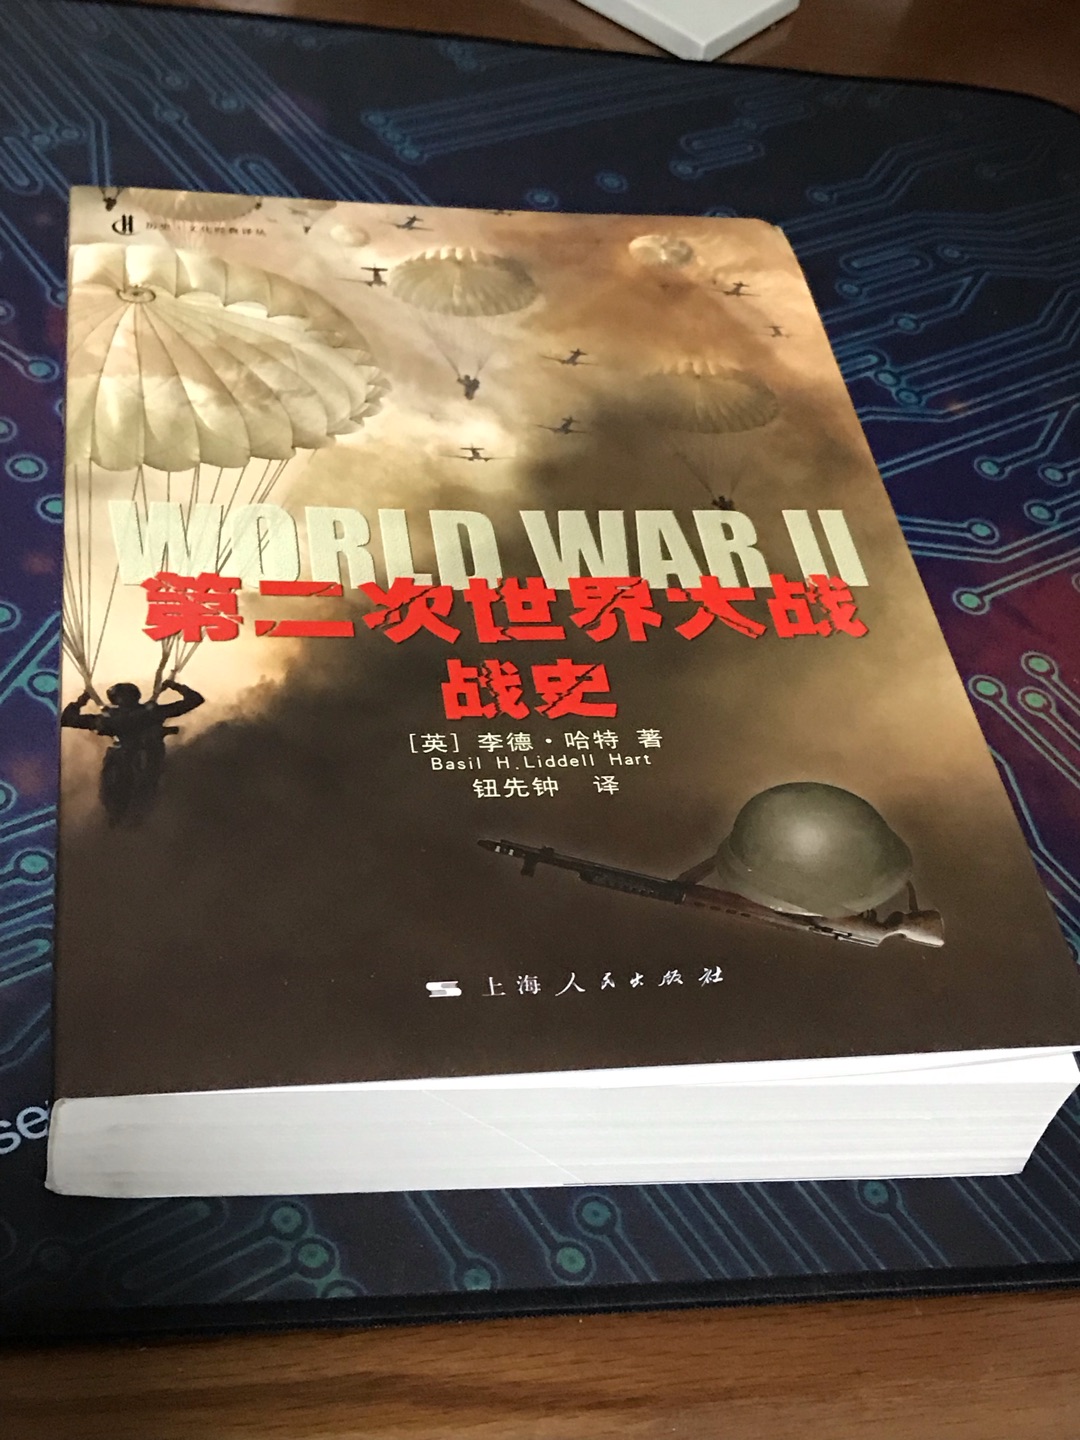 第二次世界大战是距今最近的一场大规模战争，在人类历史上空前绝后，要想了解这次战争的前因后果，推荐看这本1970年出版的的《第二次世界大战史》。该书由英国人李德·哈特撰写，素有“20世纪的克劳塞维茨”之称。对图书包装不怎么上心，到手有磕碰